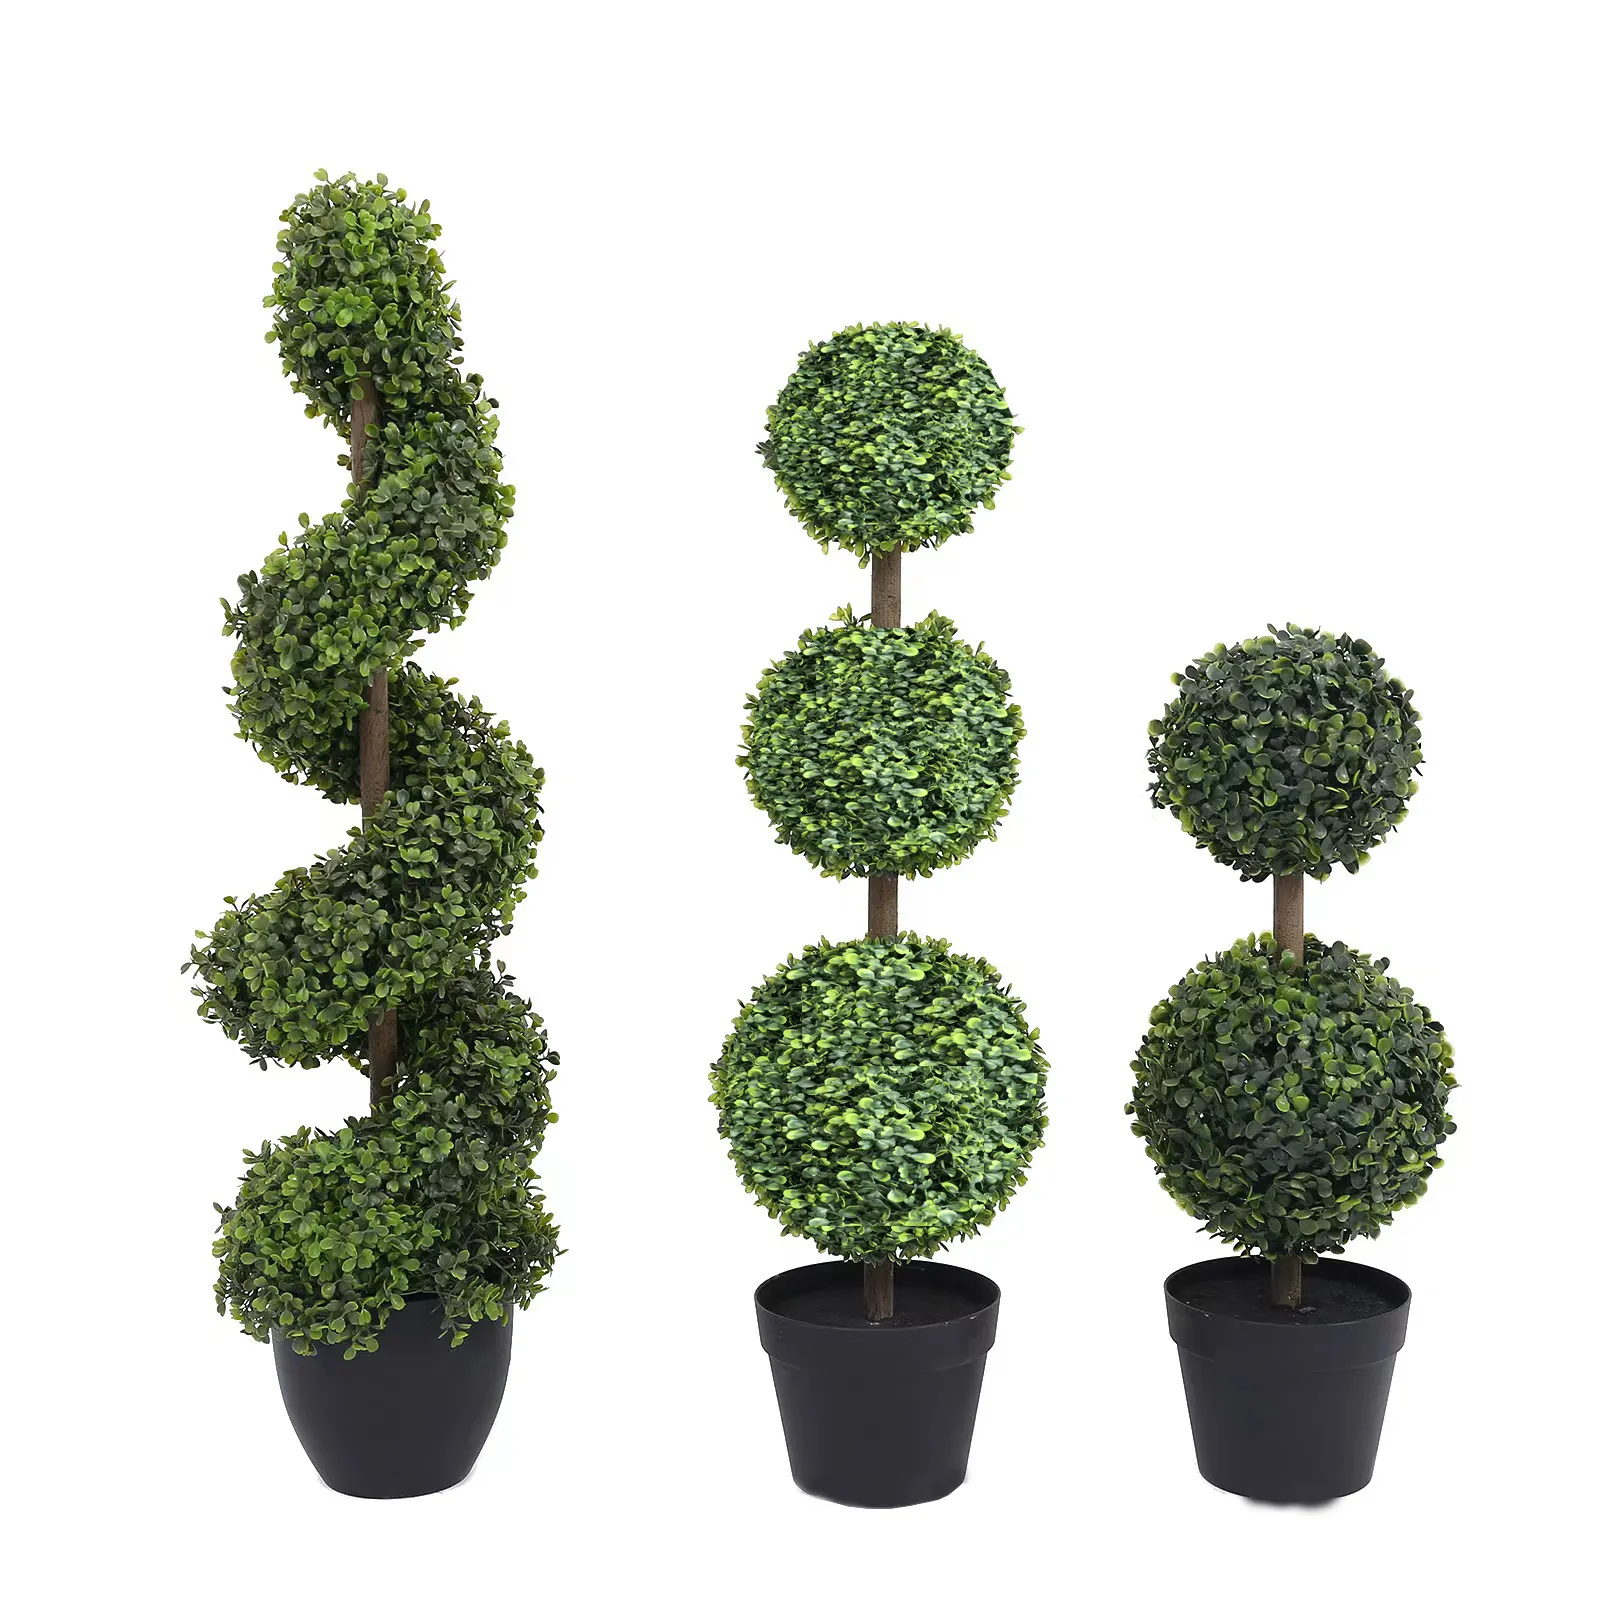 1-2m Bushy Green Künstlicher Spiral baum Indoor Outdoor Dekorative Topfbaum Gefälschte Dekoration Pflanze